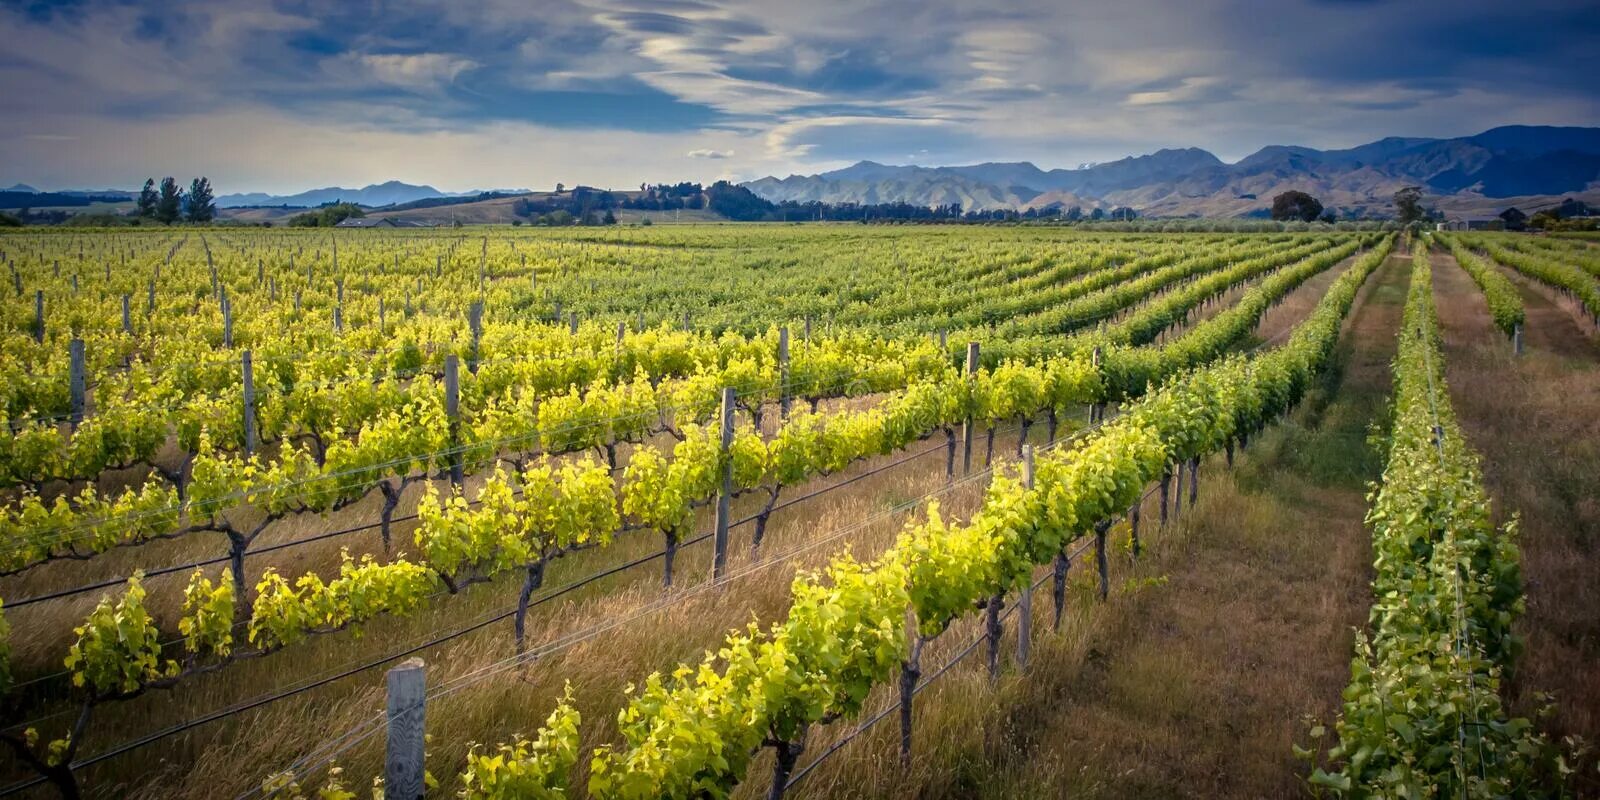 Промышленность новой зеландии. Виноградники новой Зеландии регион Мальборо. Марлборо (Marlborough, новая Зеландия) виноградники. Новая Зеландия виноградники. Винодельня новая Зеландия.